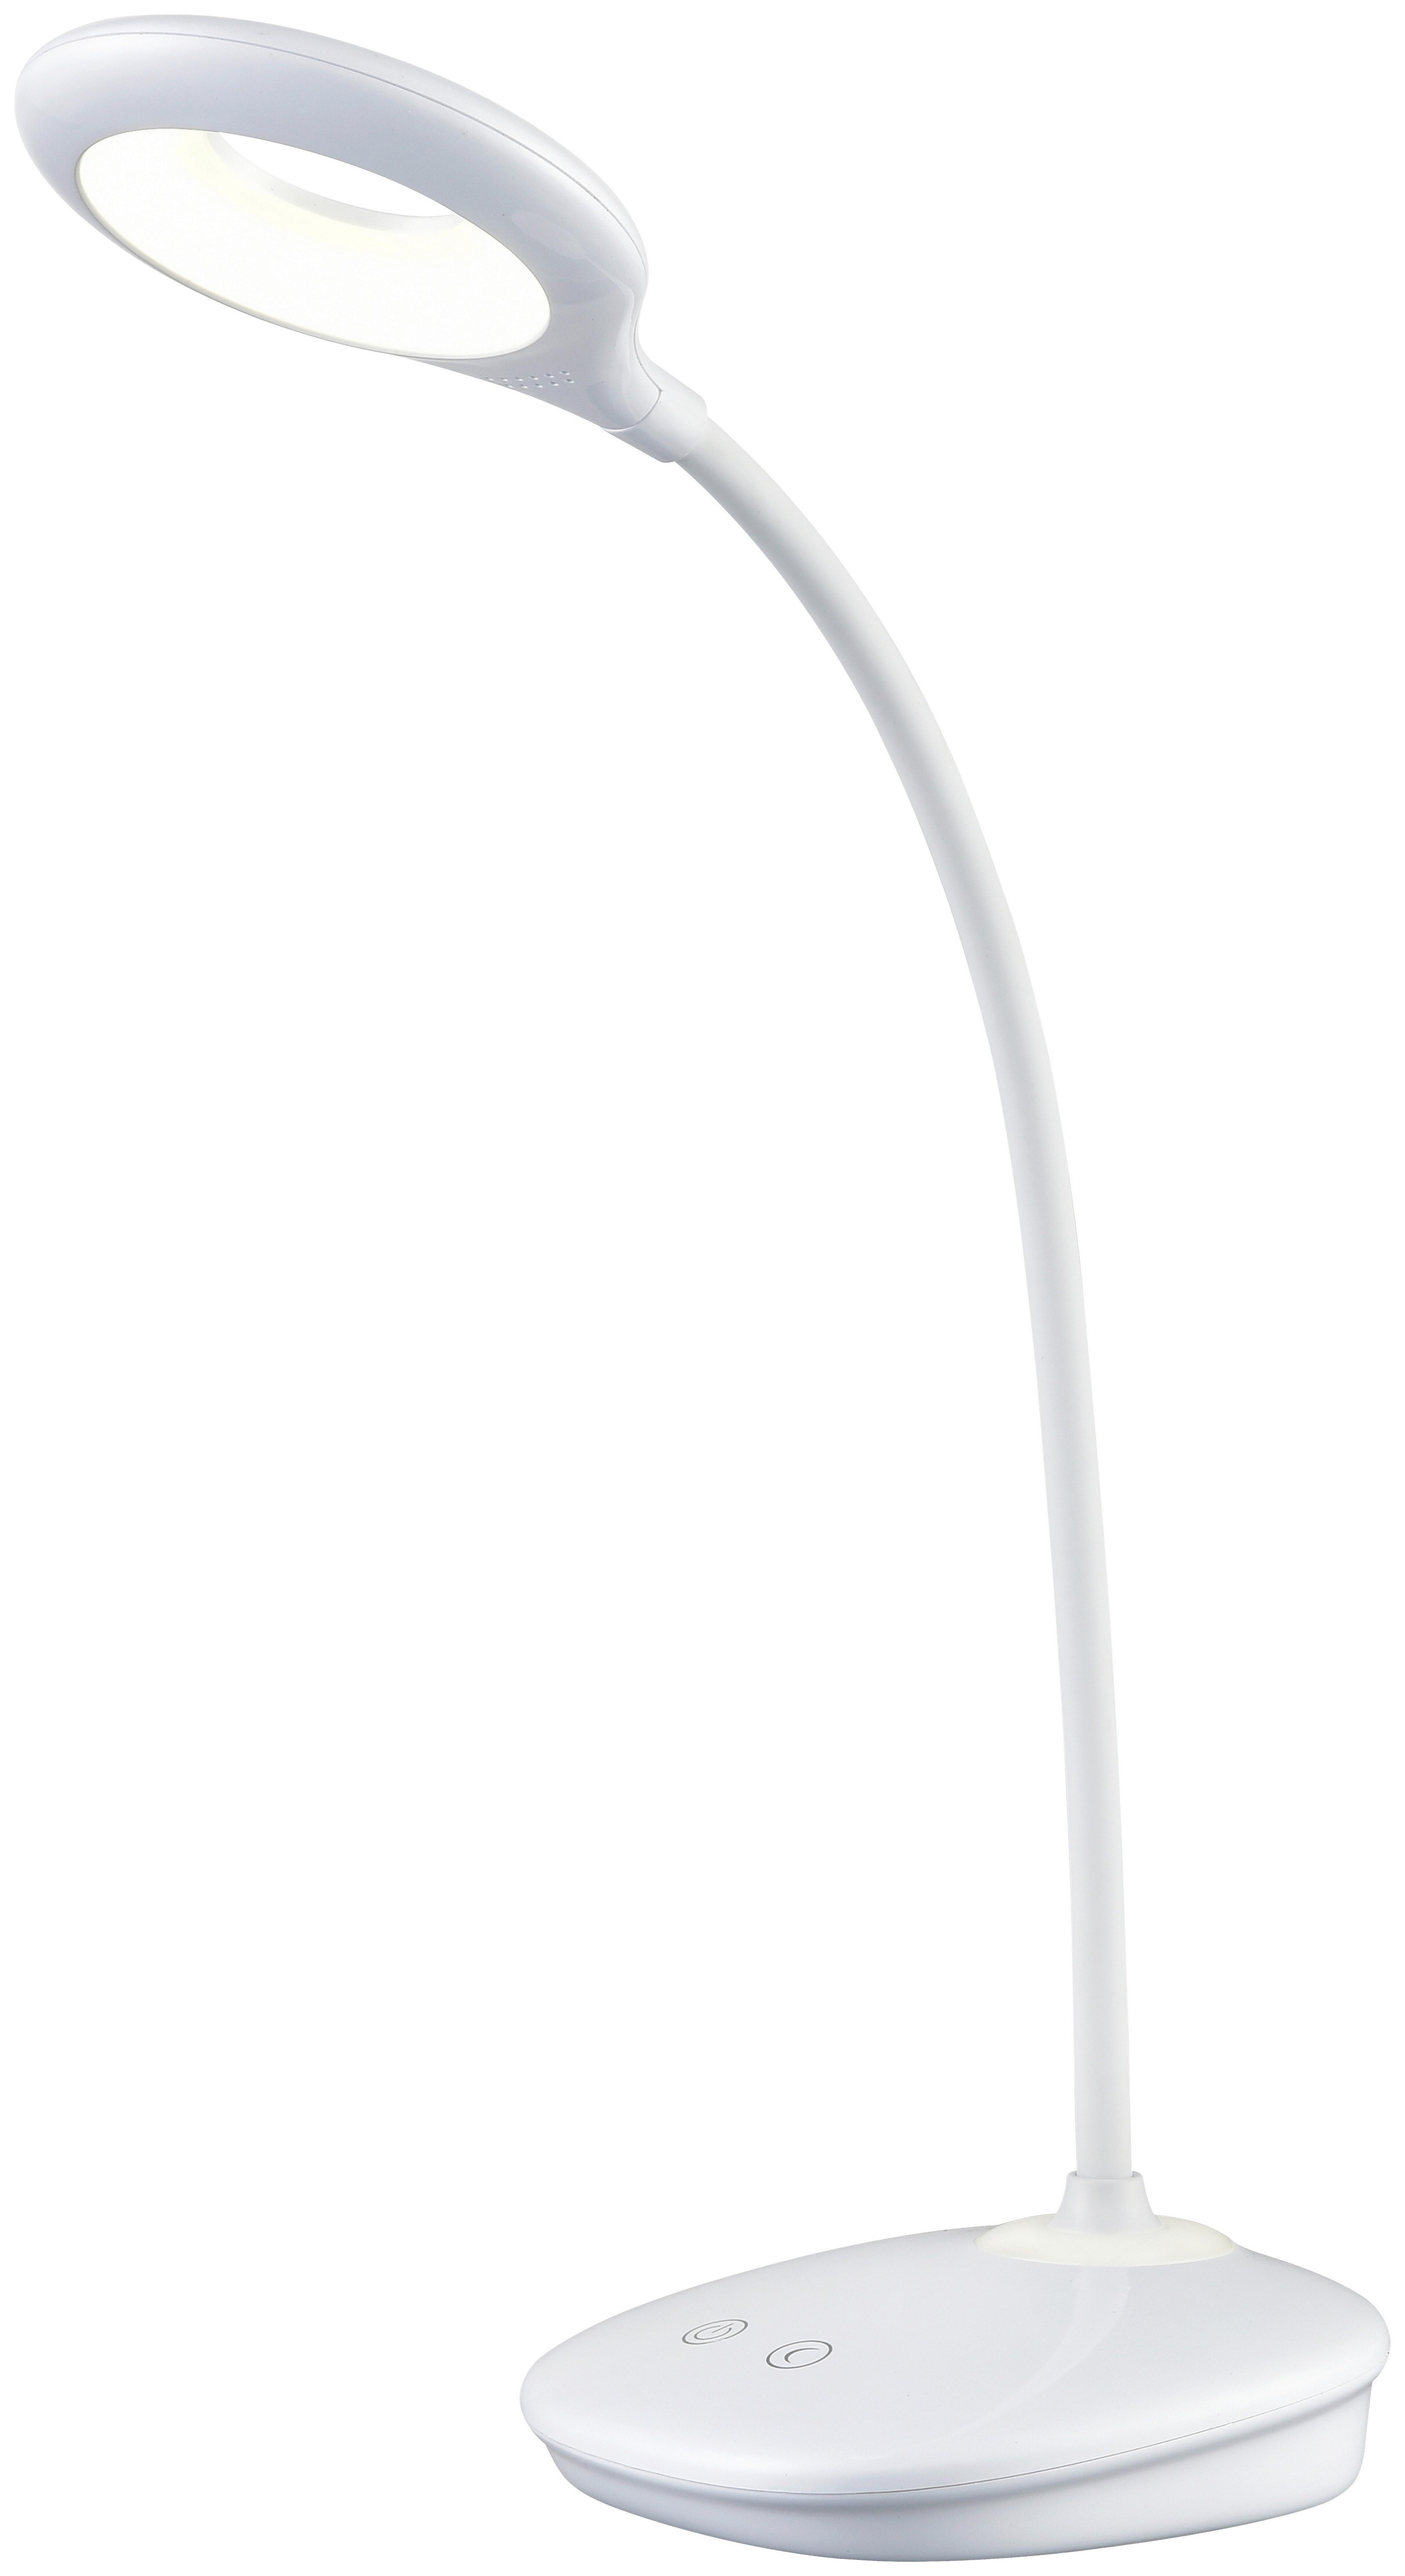 Schreibtischleuchte Luli max. 4 Watt - Weiß, LIFESTYLE, Kunststoff (12/43cm) - Modern Living